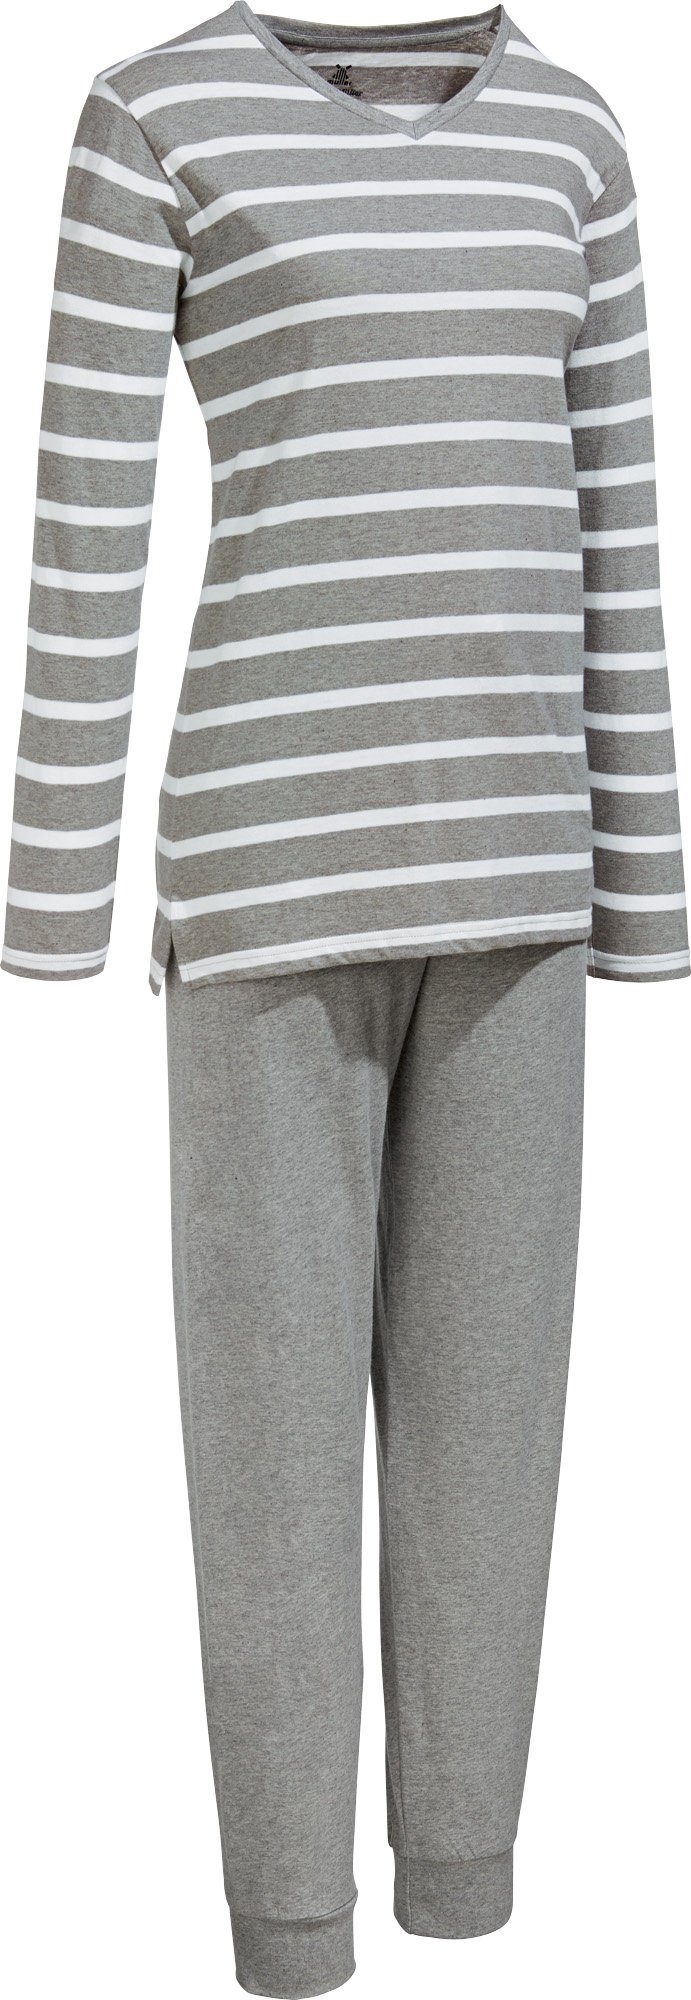 Erwin Single-Jersey Damen-Schlafanzug Müller Streifen Pyjama